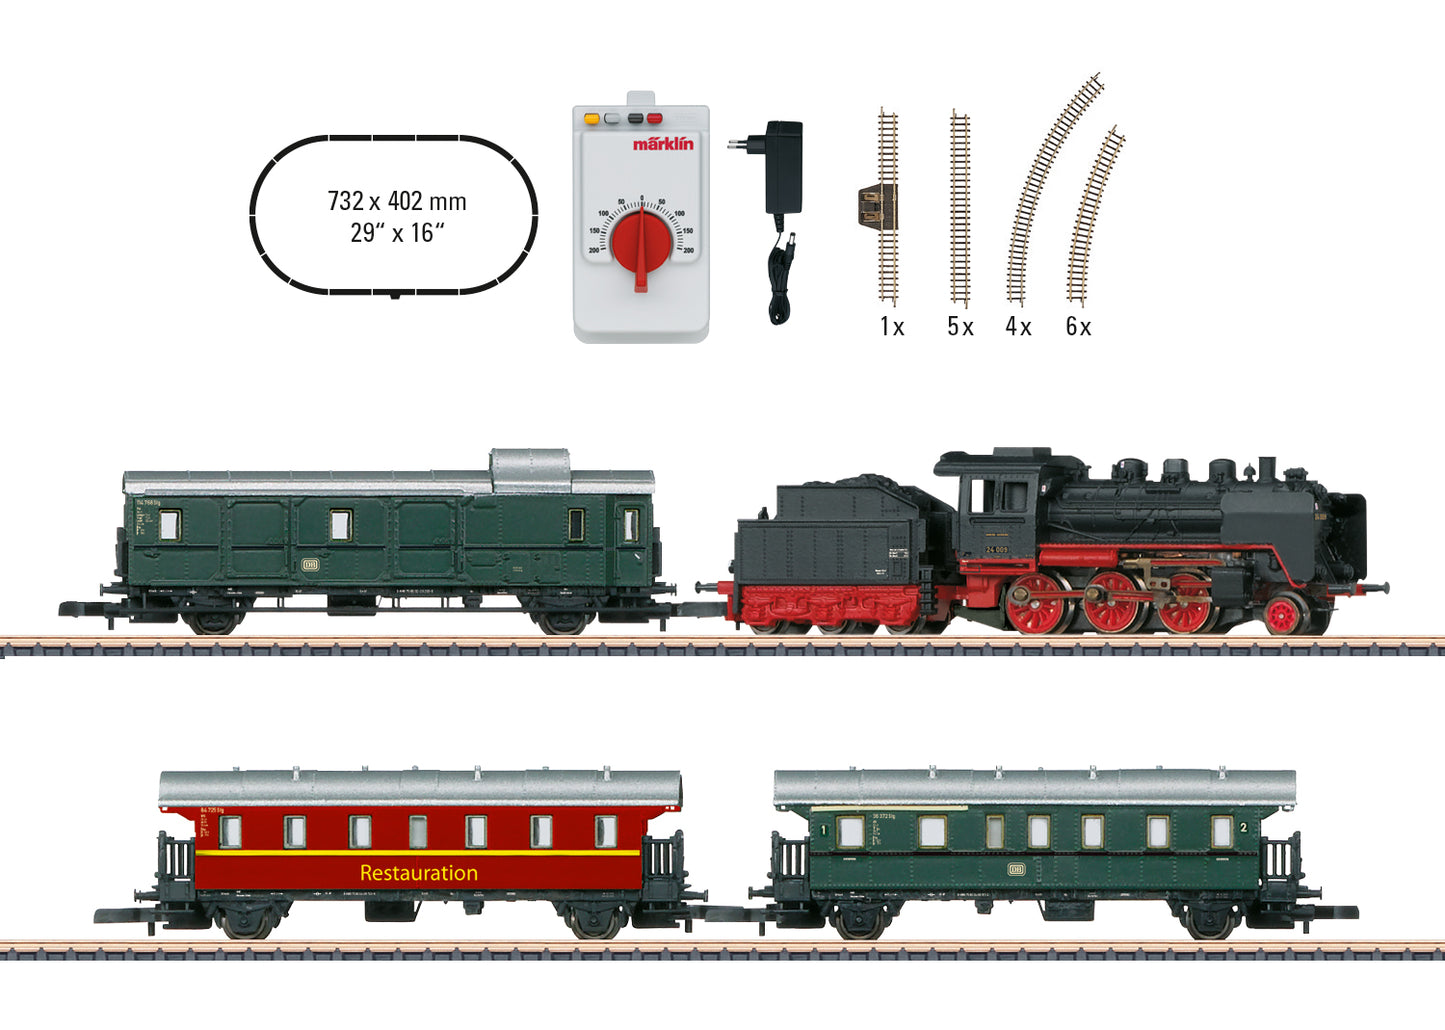 Marklin 81874: "Museum Passenger Train" Starter Set with a Class 24 Steam Locomotive